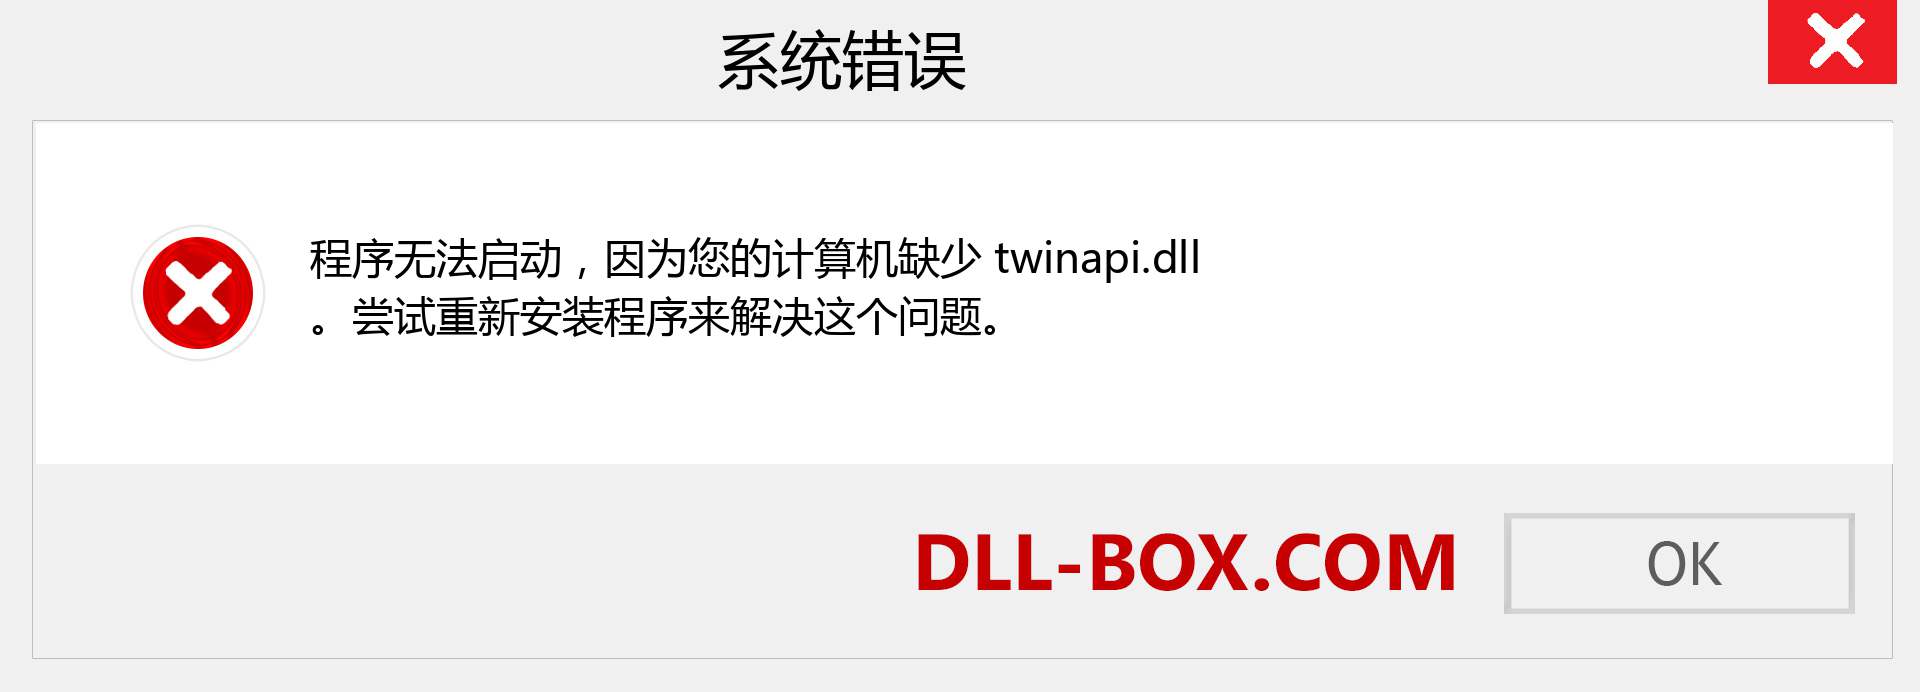 twinapi.dll 文件丢失？。 适用于 Windows 7、8、10 的下载 - 修复 Windows、照片、图像上的 twinapi dll 丢失错误